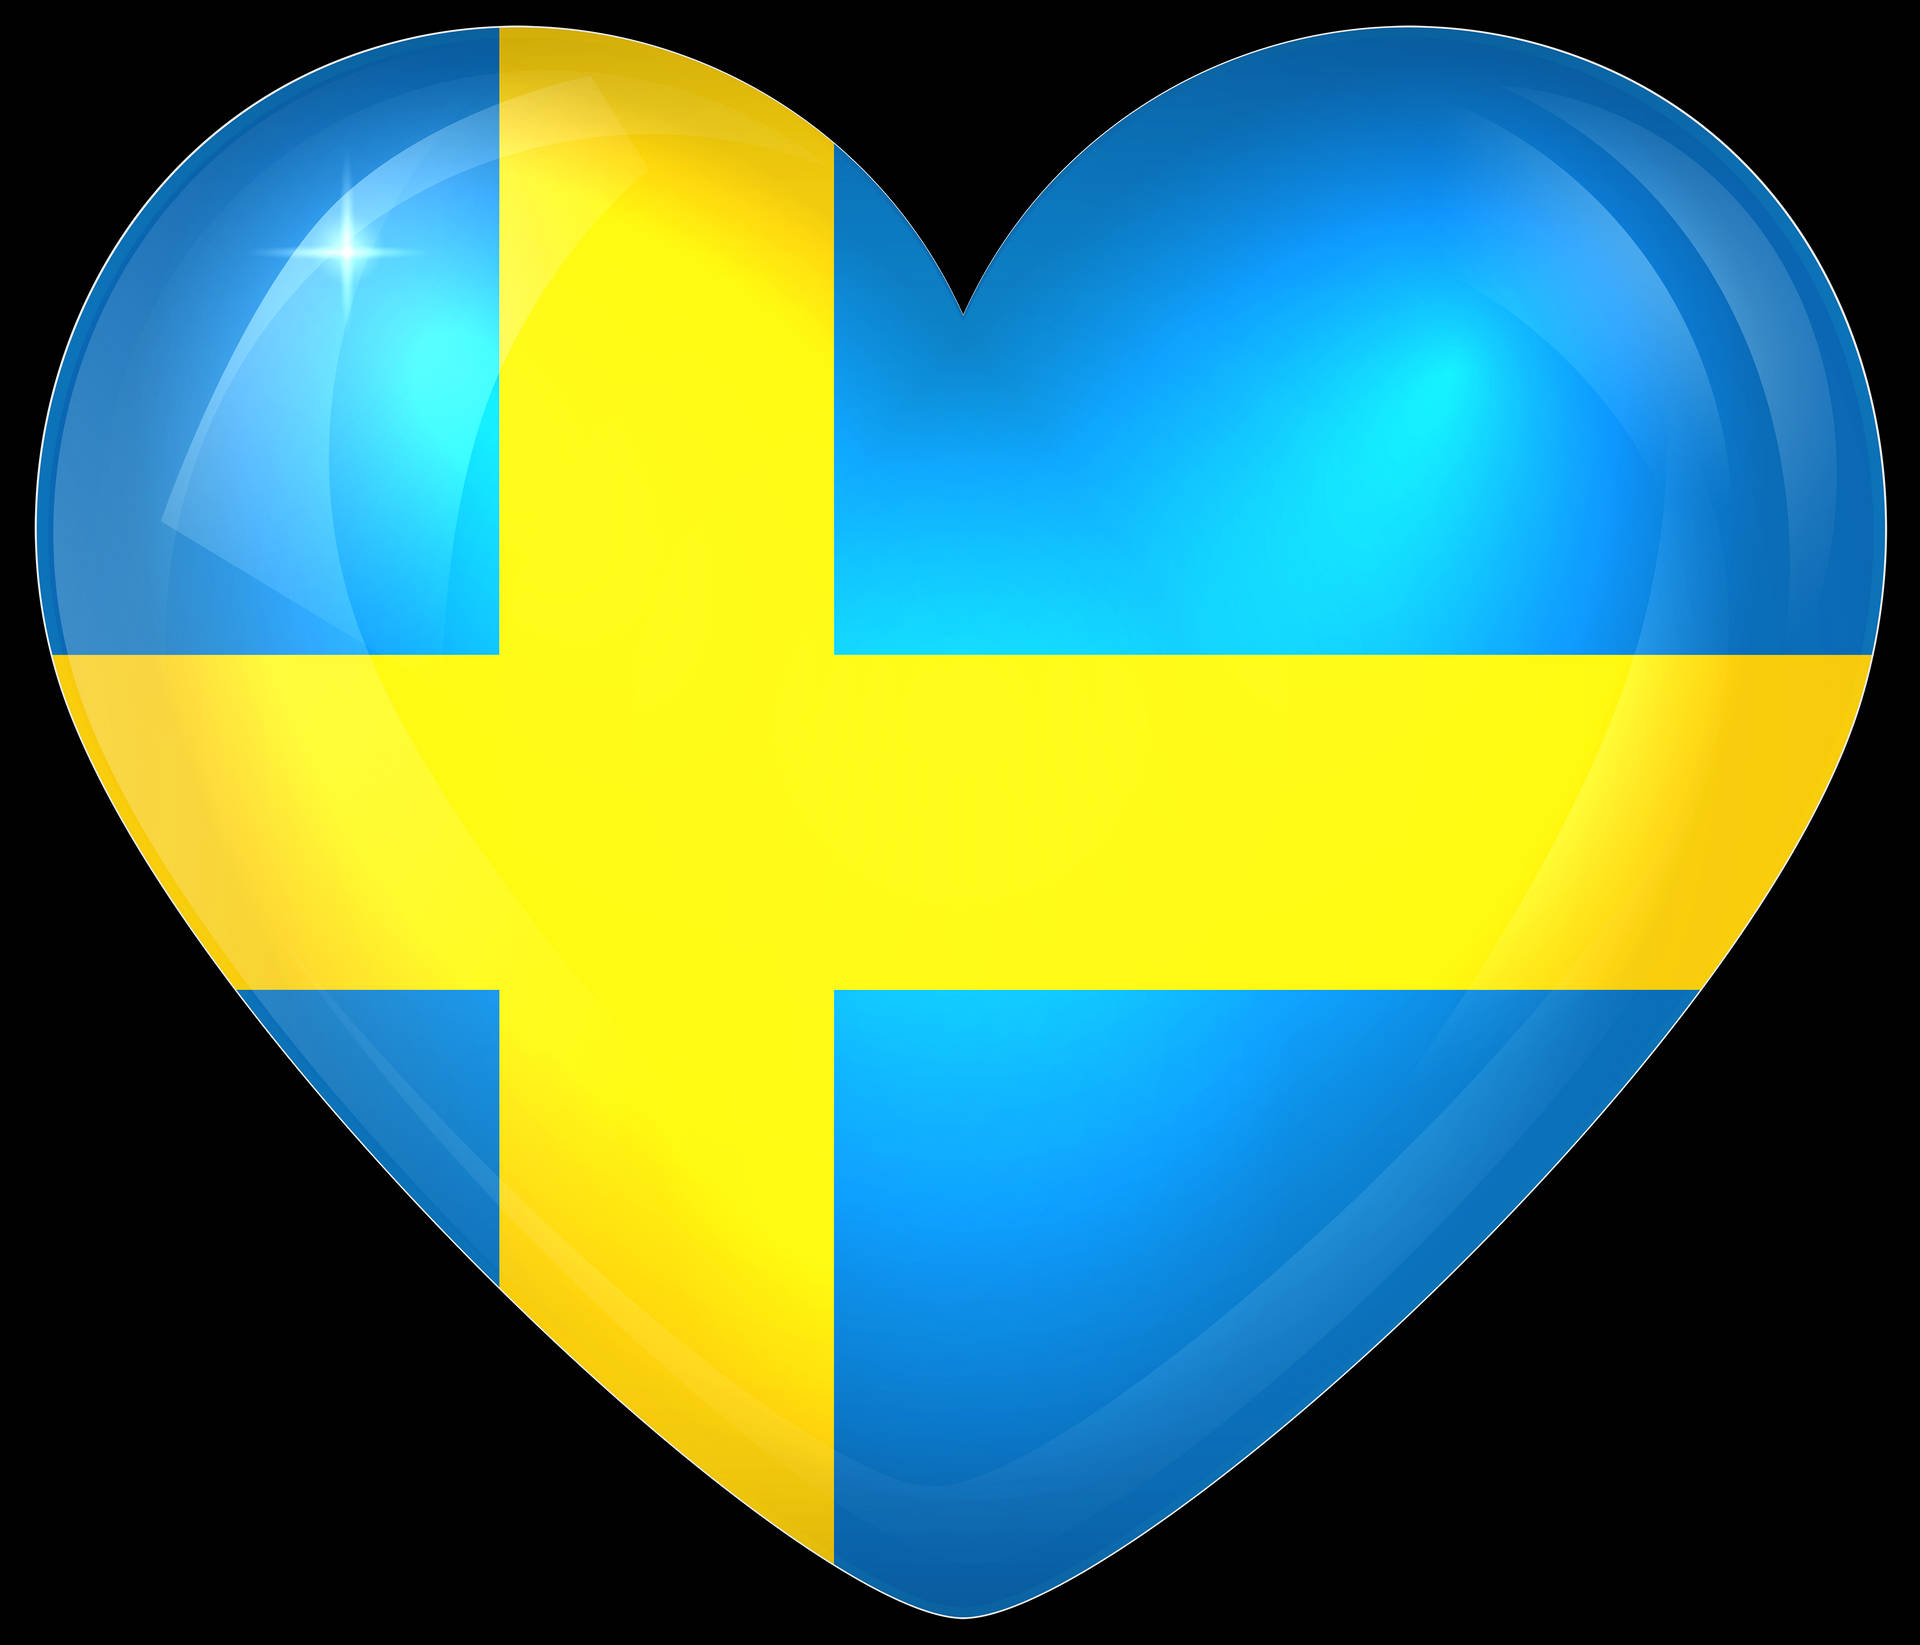 Sweden Heart Flag Wallpaper